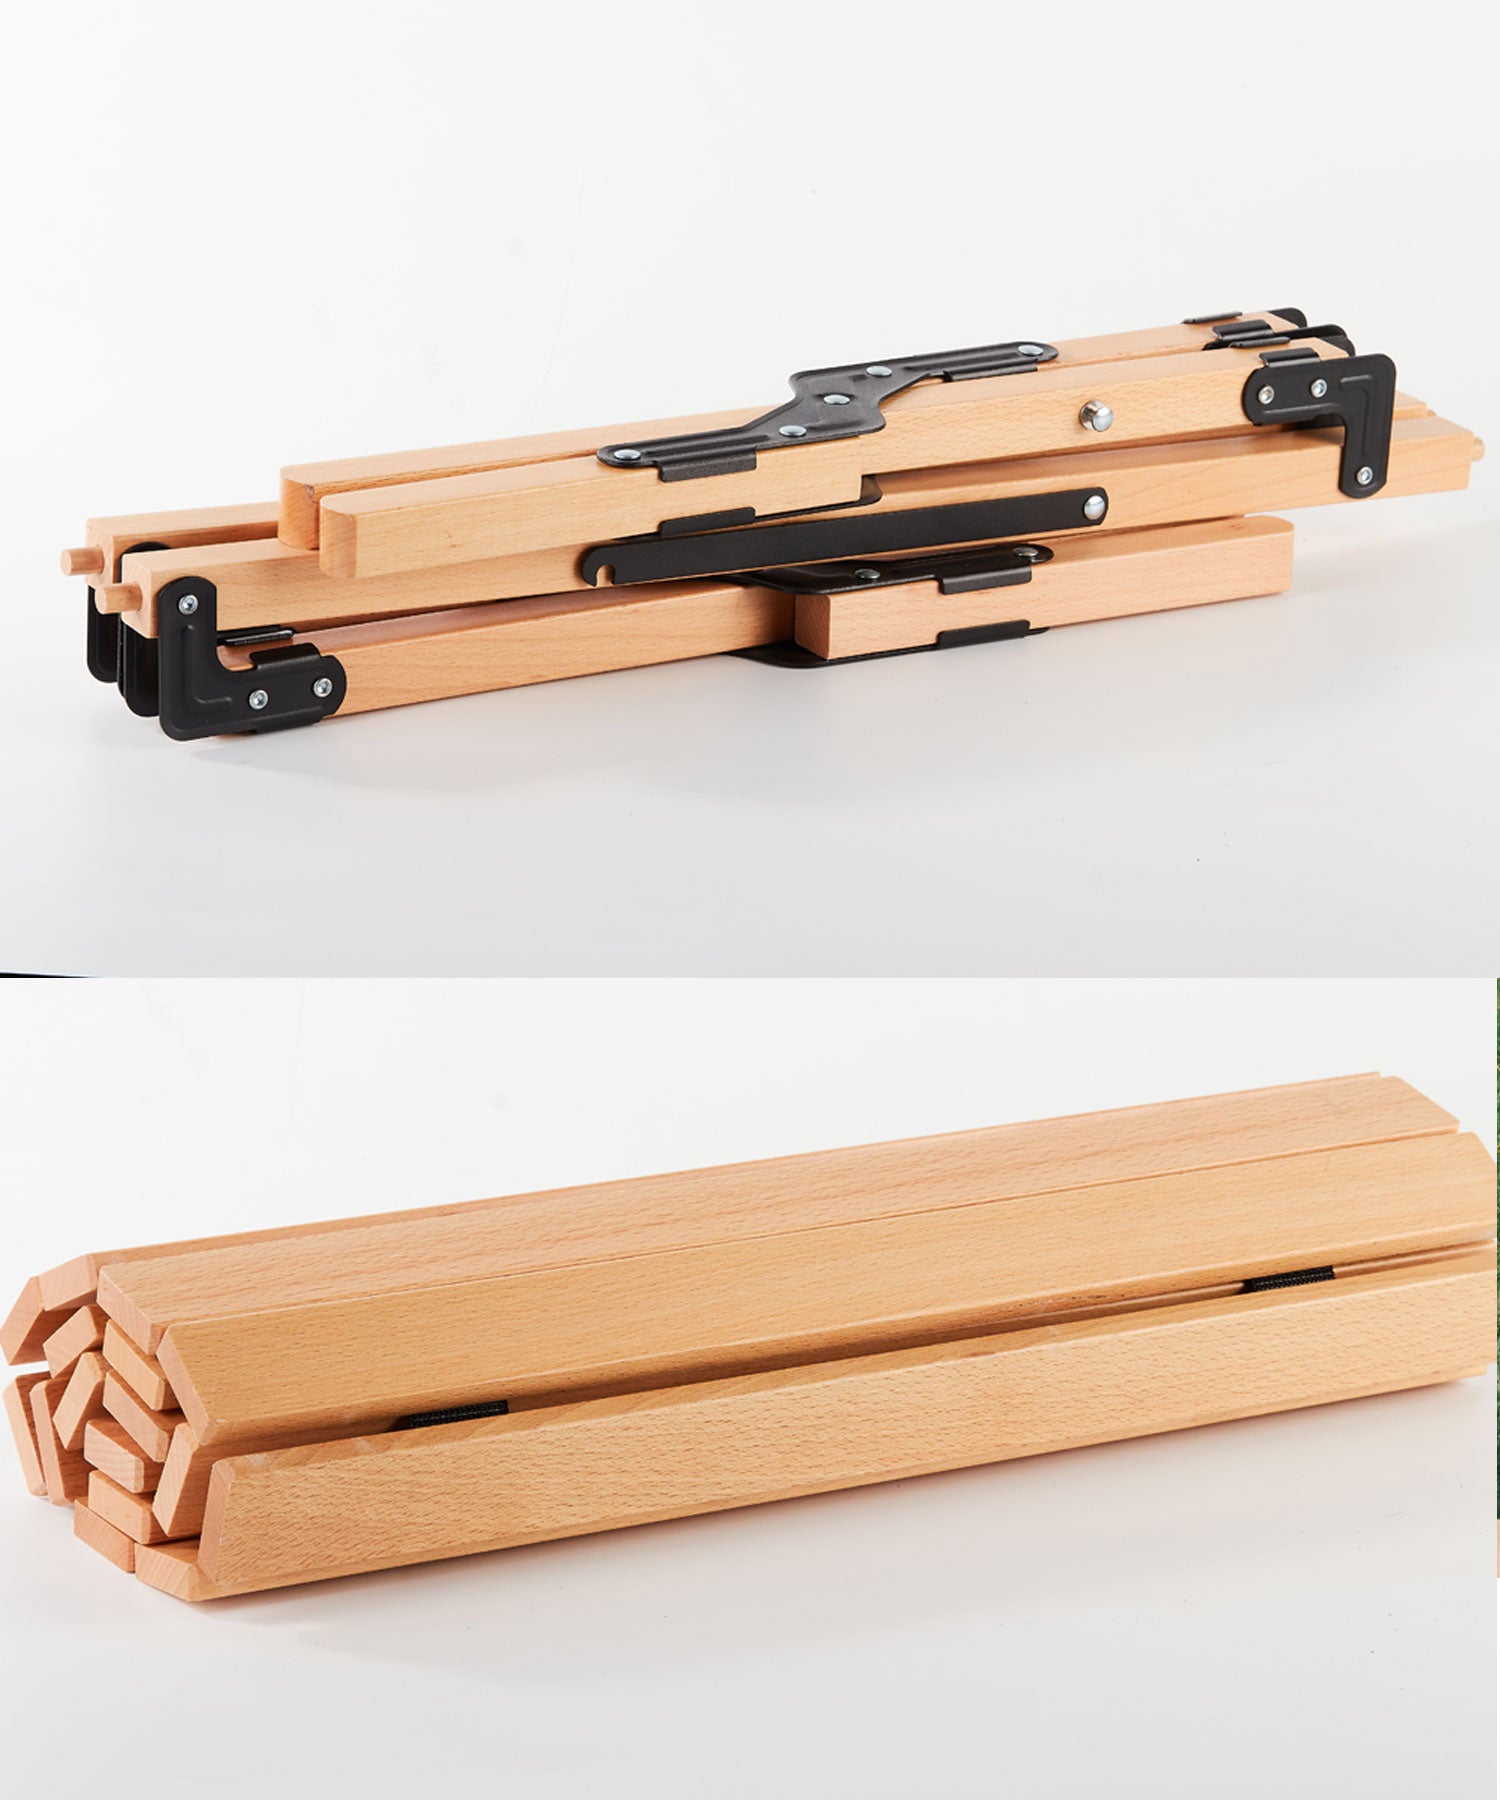 Woodi Roll Table 】ウッディロールテーブル 天板は丸める木製テーブル 